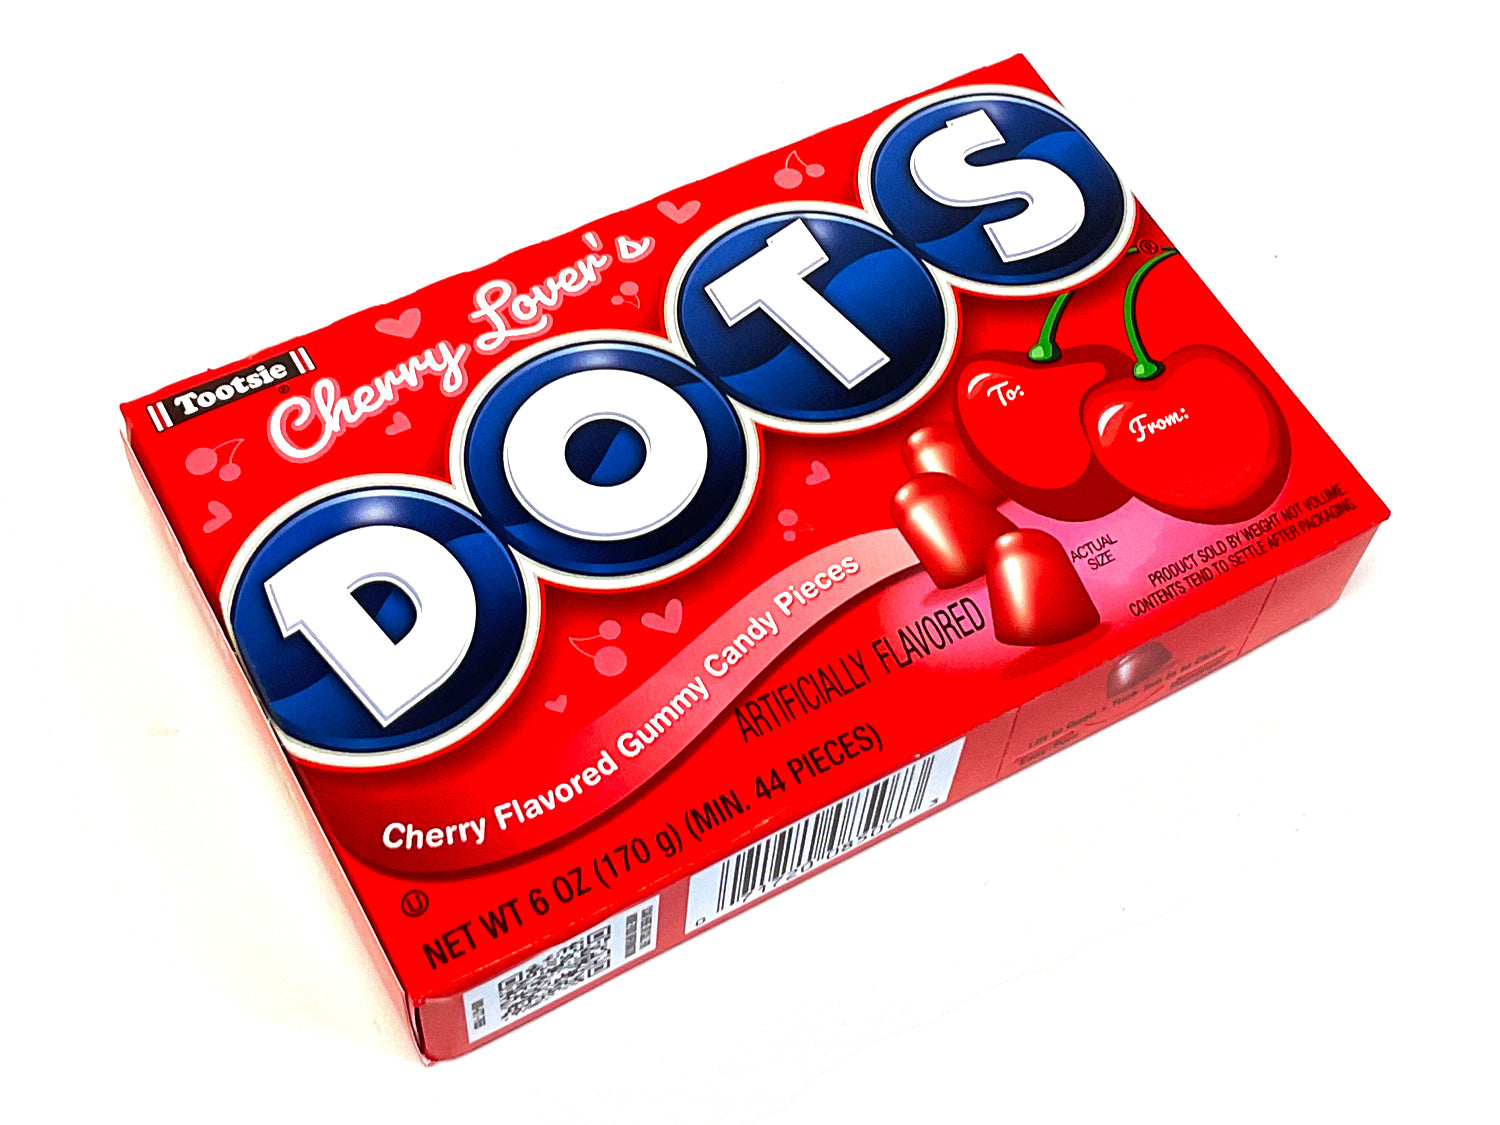 Dots Theater Box - True Treats Historic Candy